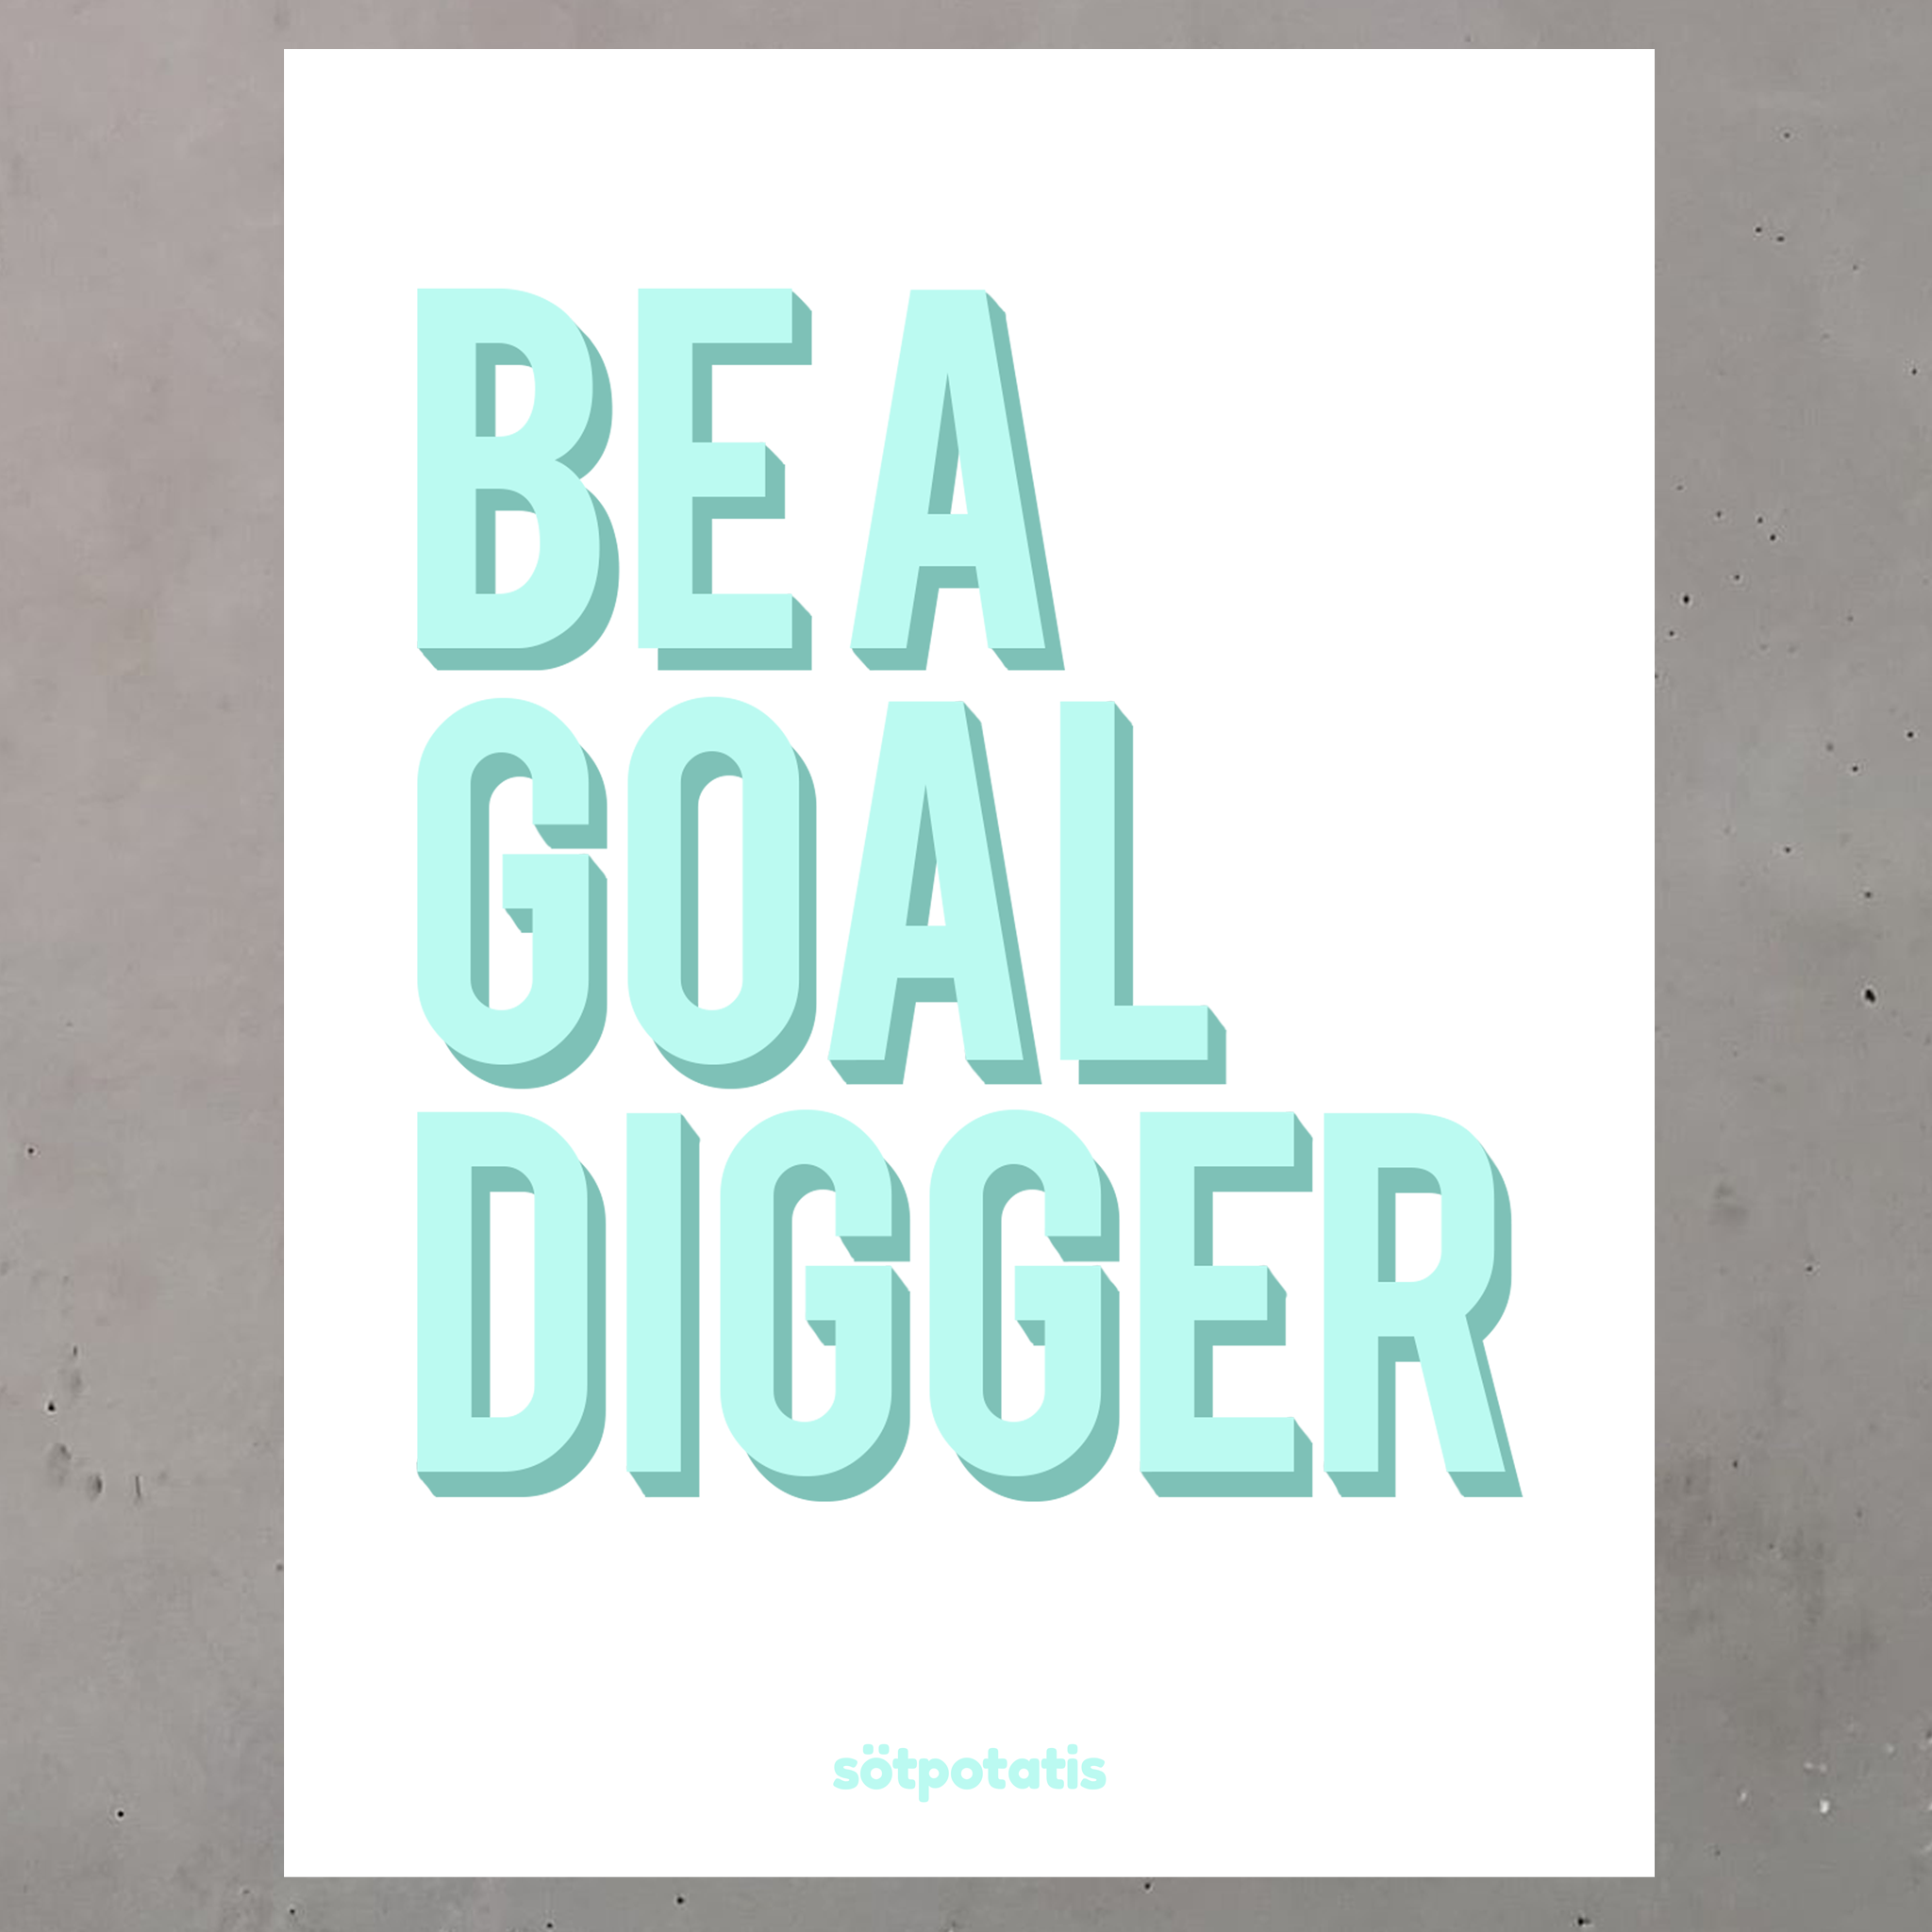 Be A Goal Digger